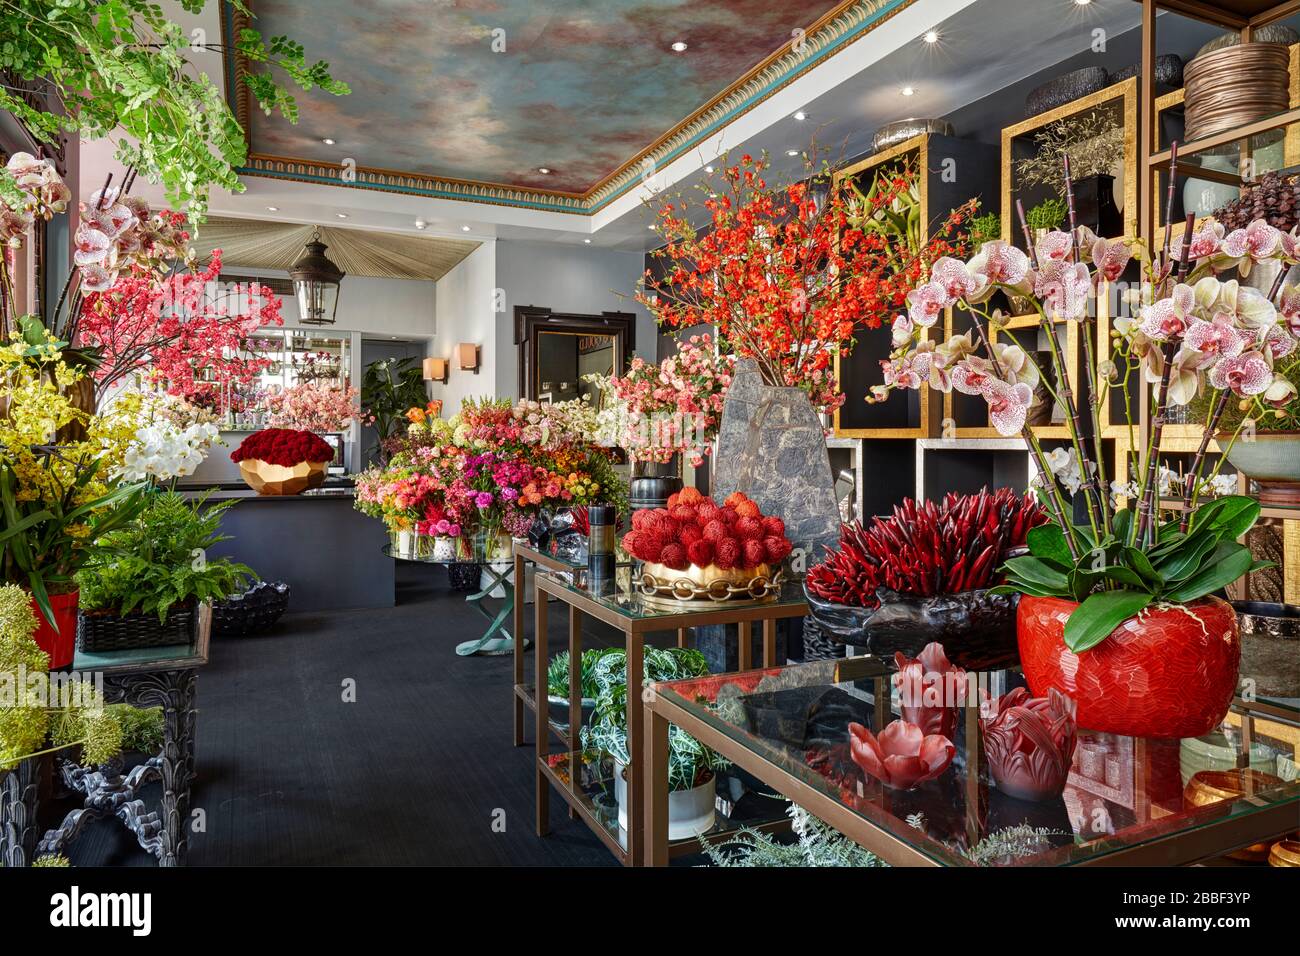 fiori negozio fiore colore fioriture abbastanza abbondante Foto Stock